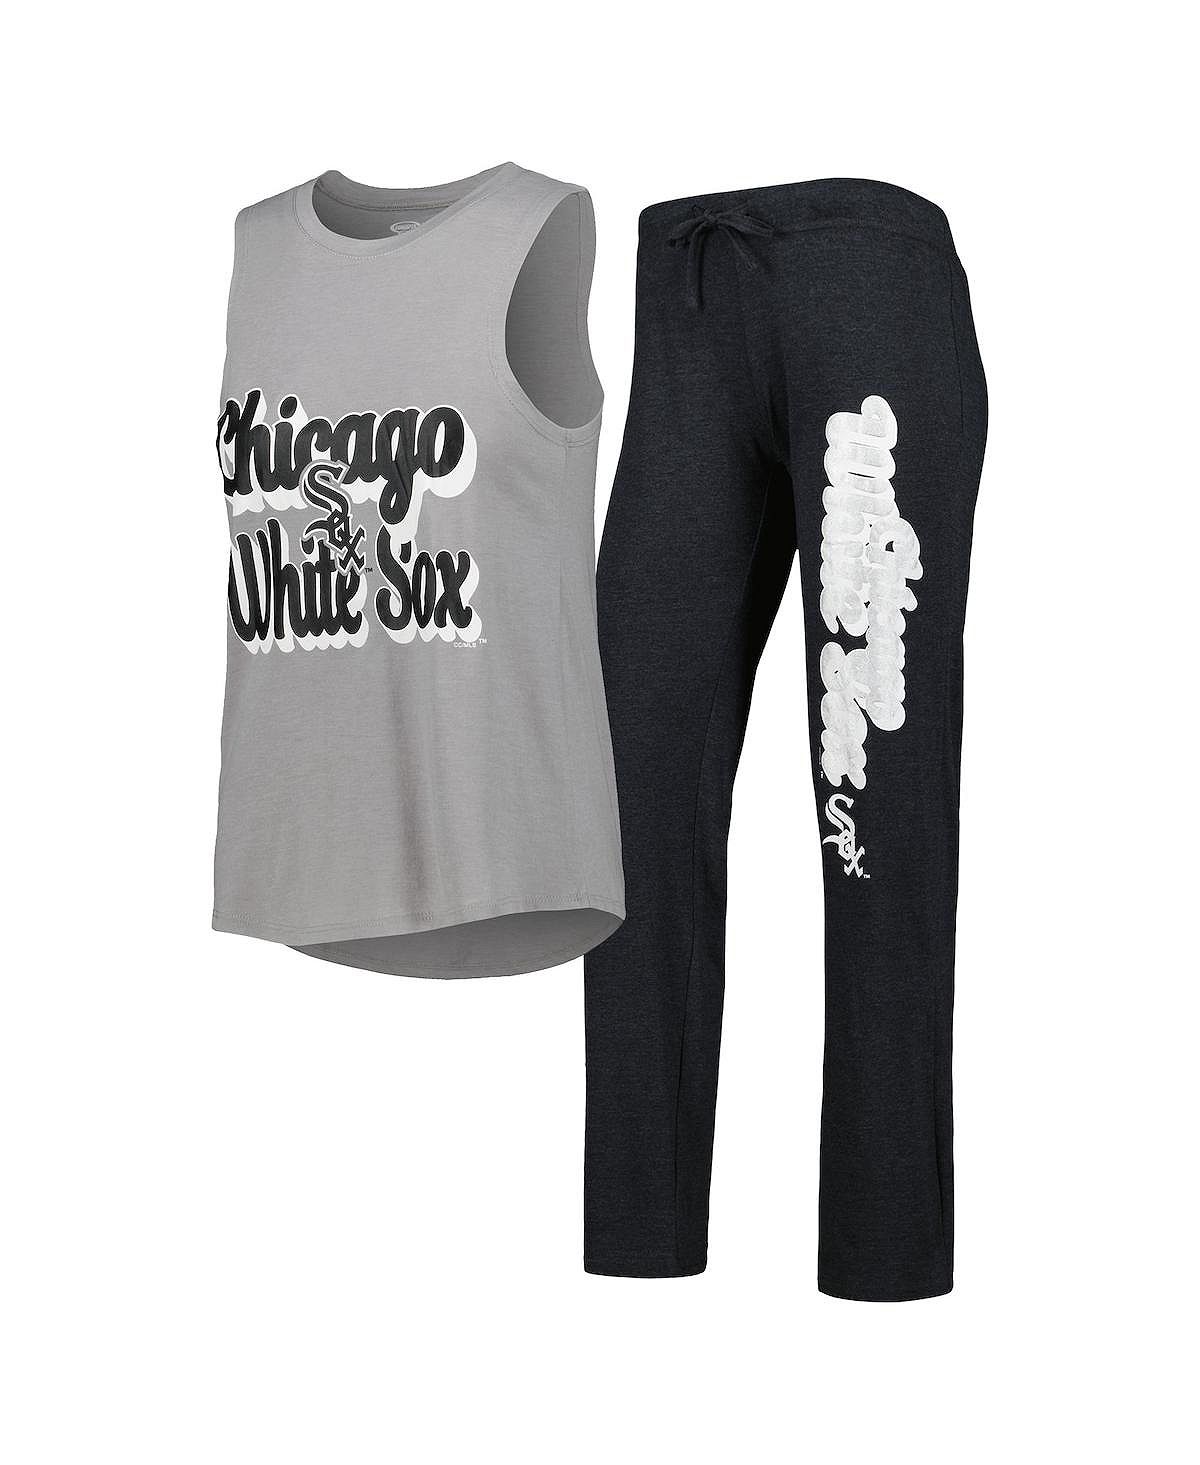 Женский комплект для сна: черный Хизер, серый Хизер, Чикаго Уайт Сокс, майка с мышцами и брюки с надписью Meter Concepts Sport